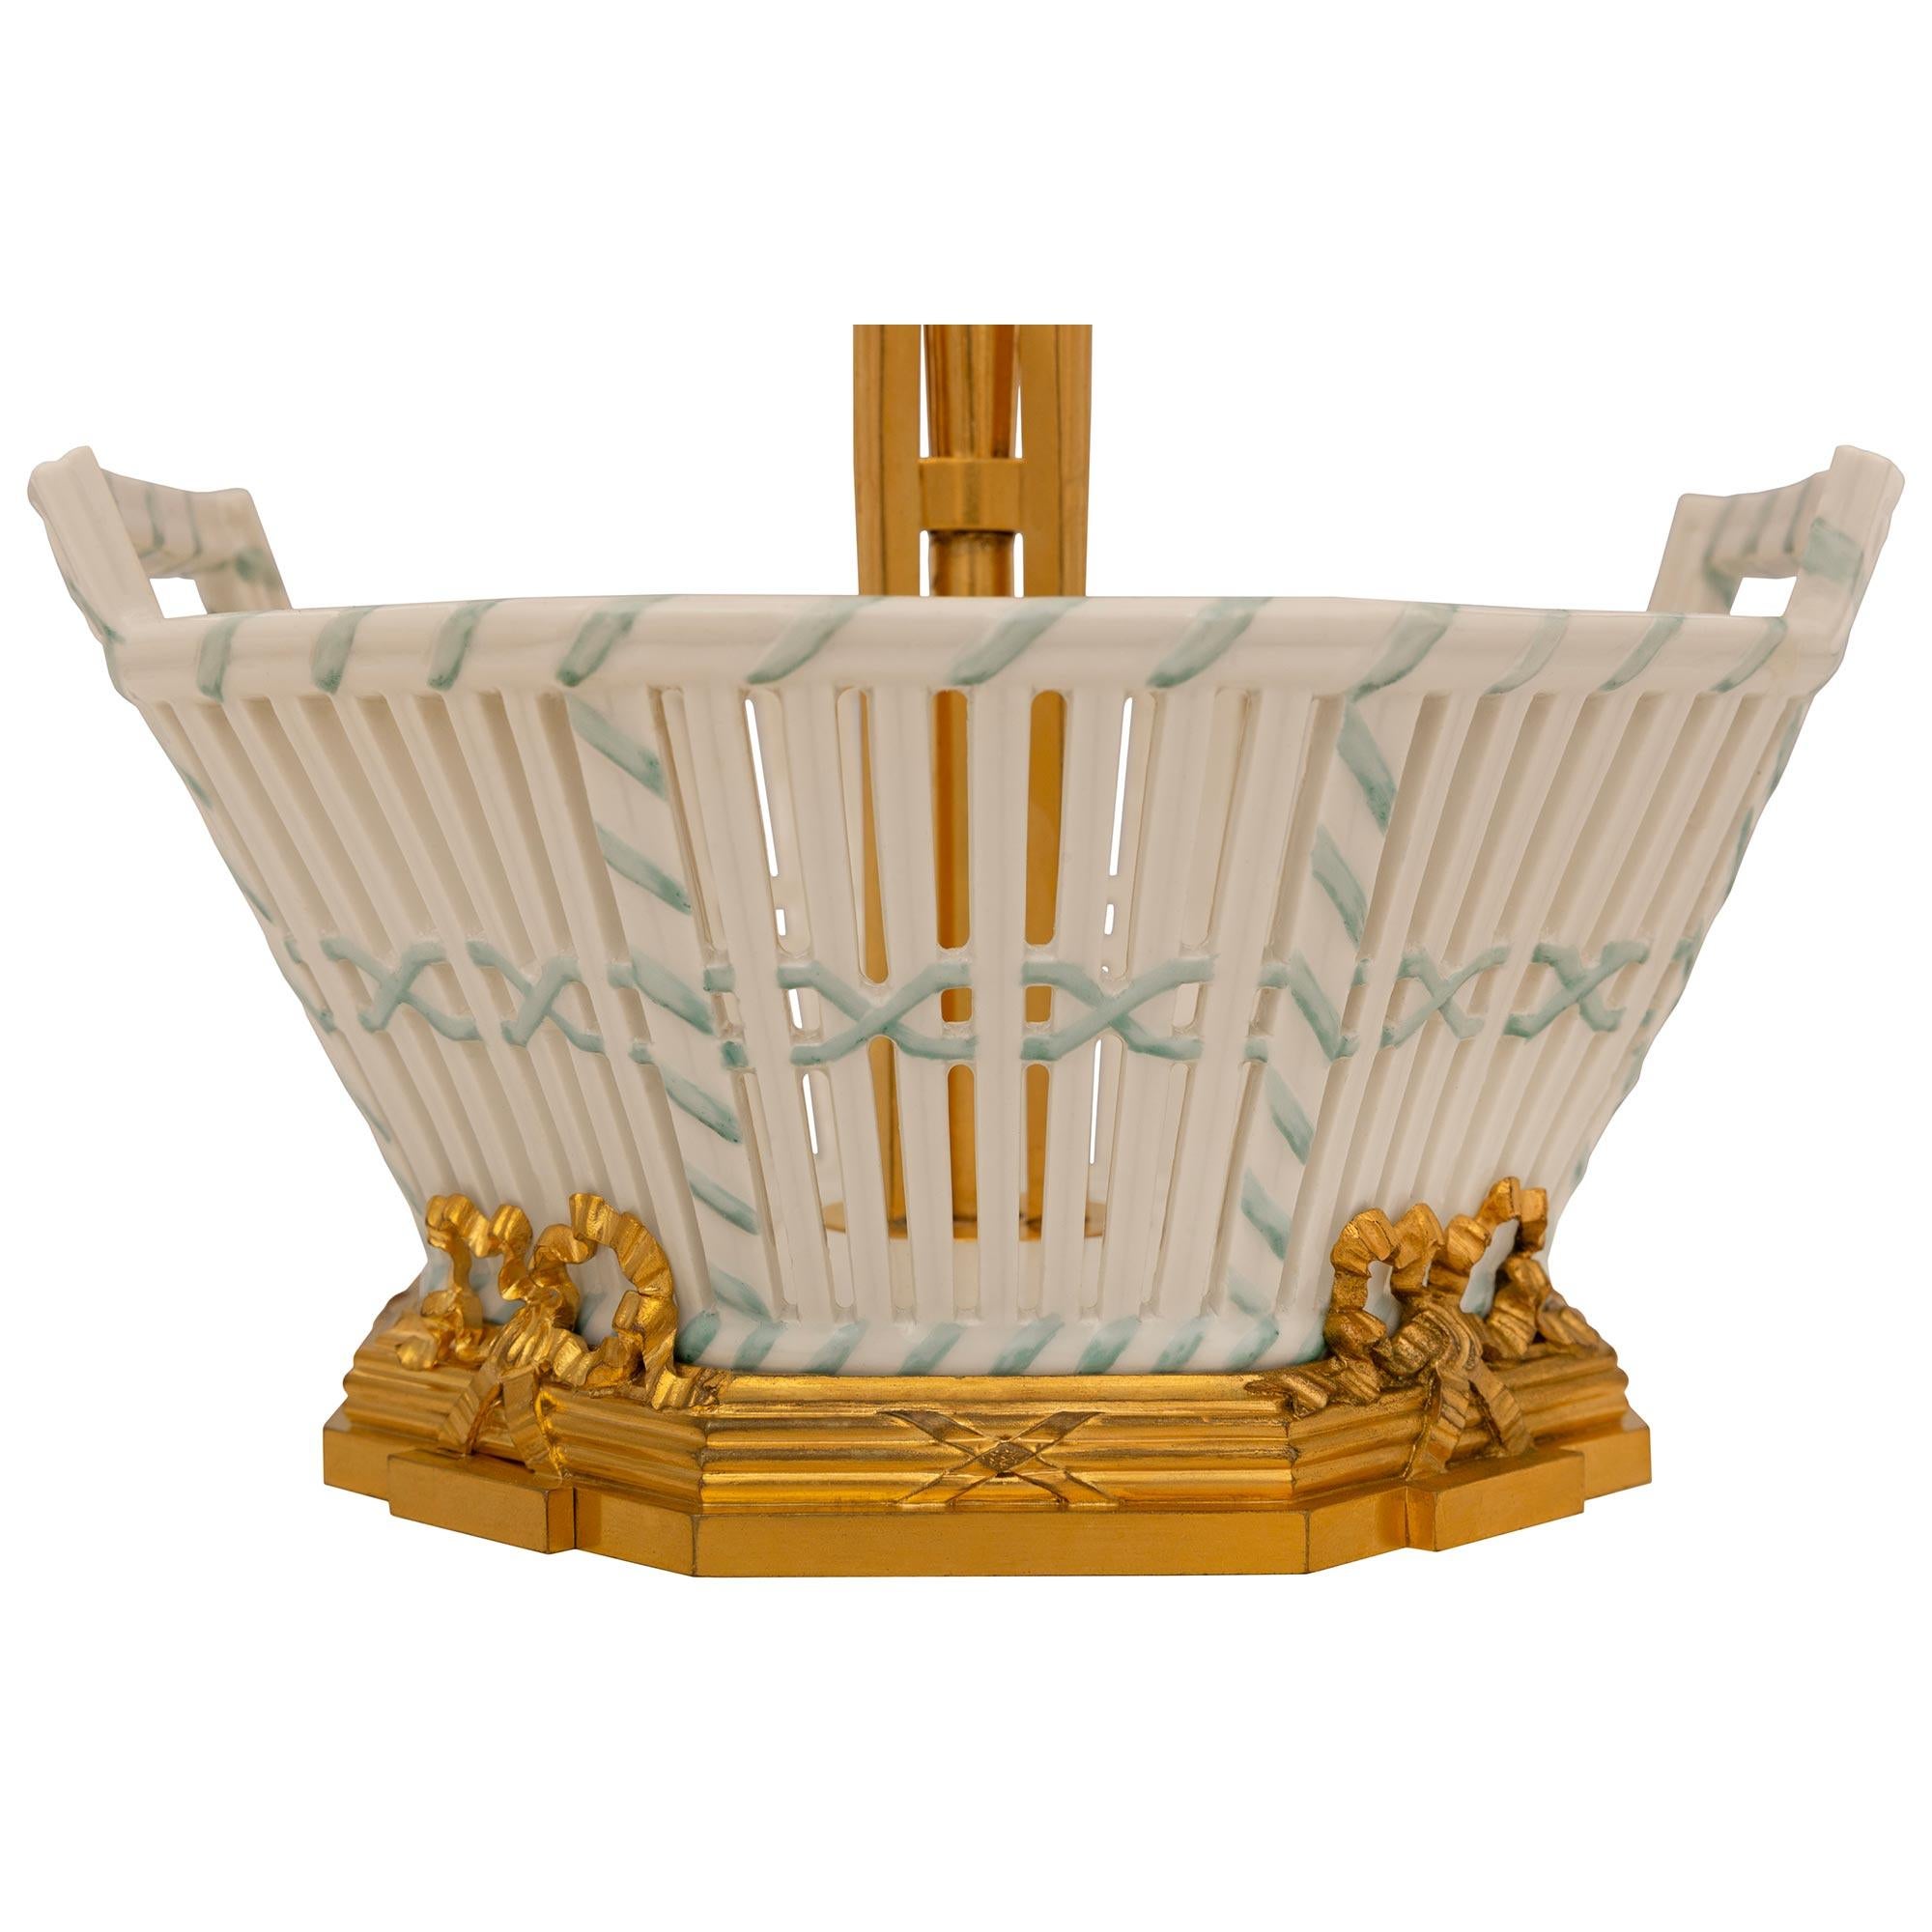 Un élégant ensemble de candélabres et de centres de table en porcelaine et bronze doré de style Louis XVI du XIXe siècle, signé Cardeilhac Paris. L'ensemble est composé de trois paniers en porcelaine, dont deux contiennent trois candélabres en